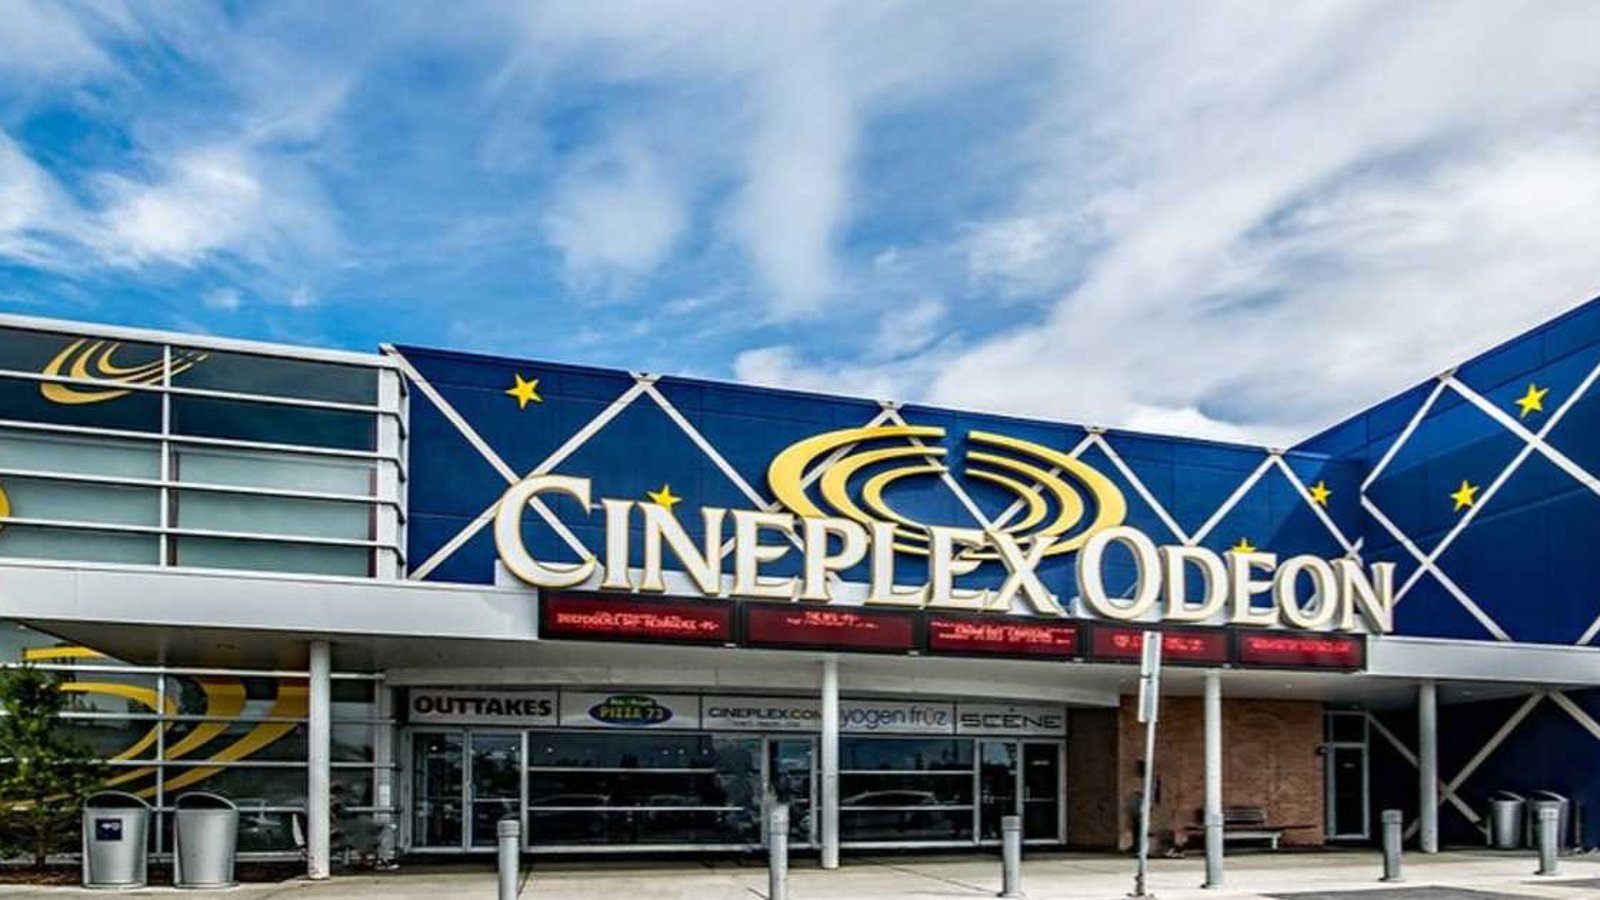 La semaine prochaine au Québec, les cinémas Cineplex offriront des films à 2,99$